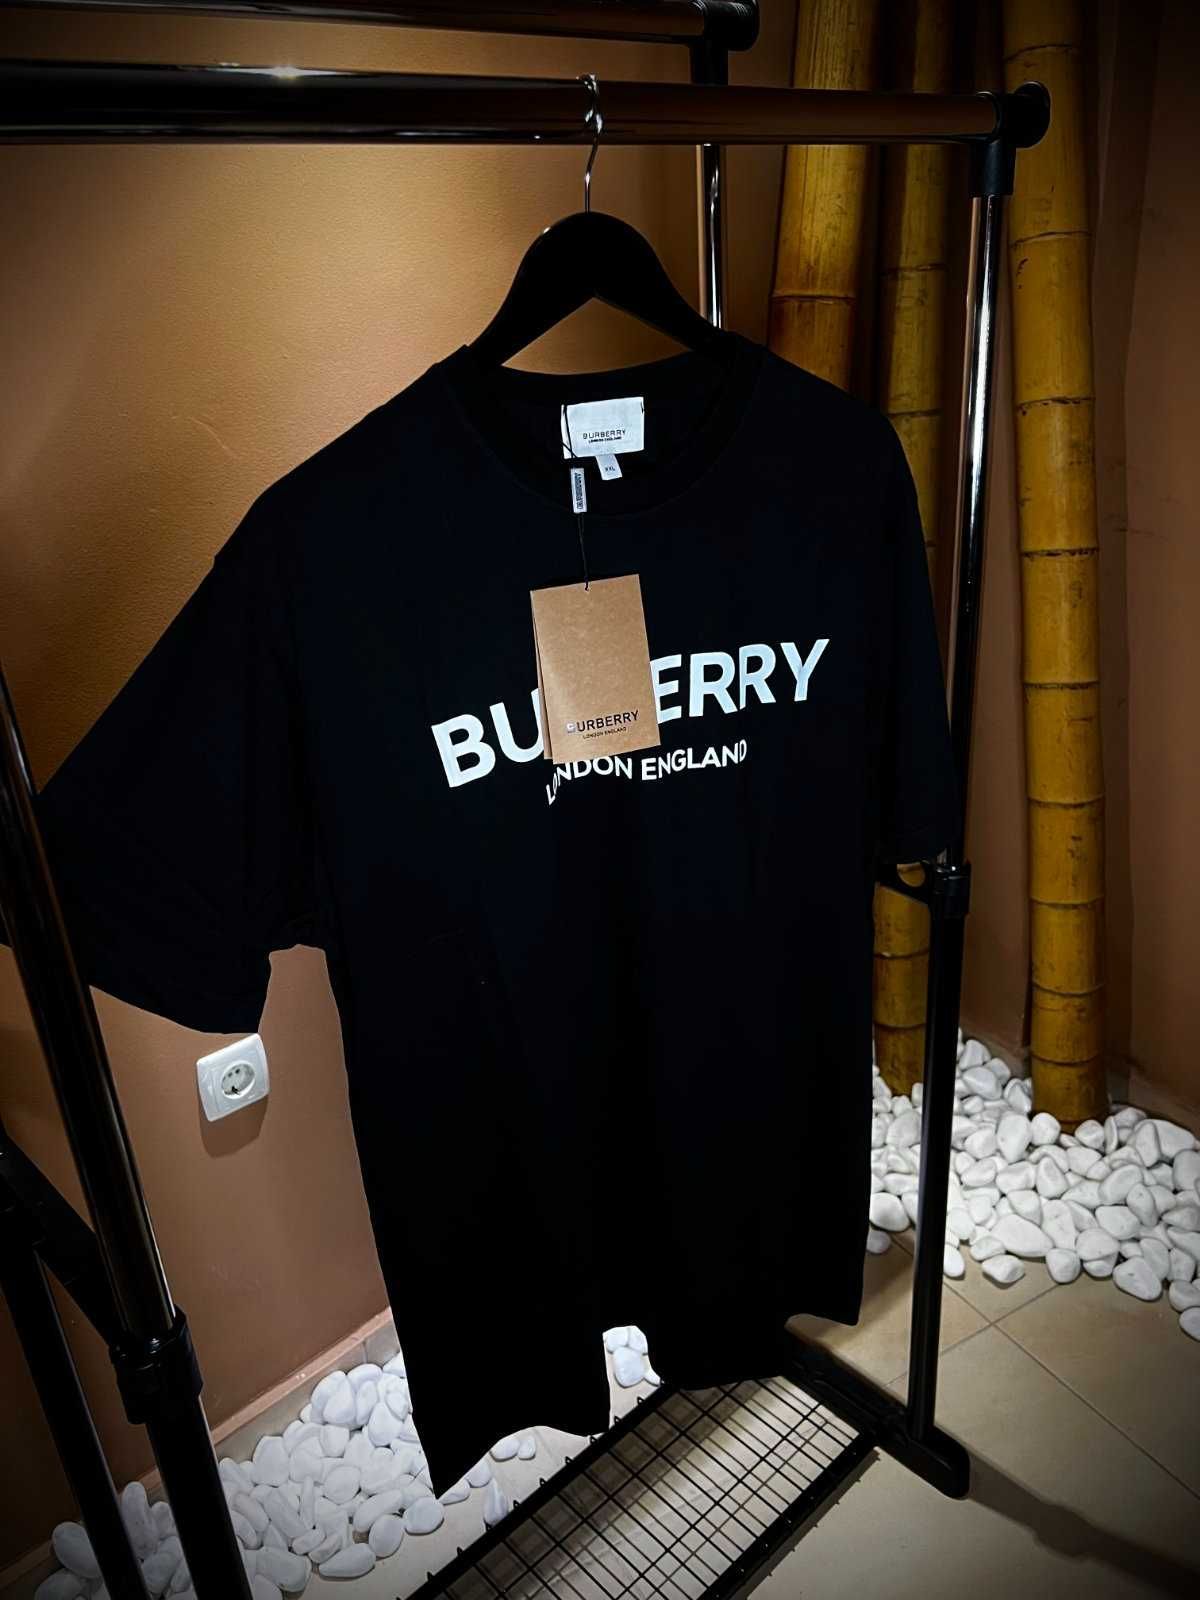 Мъжки тениски Burberry